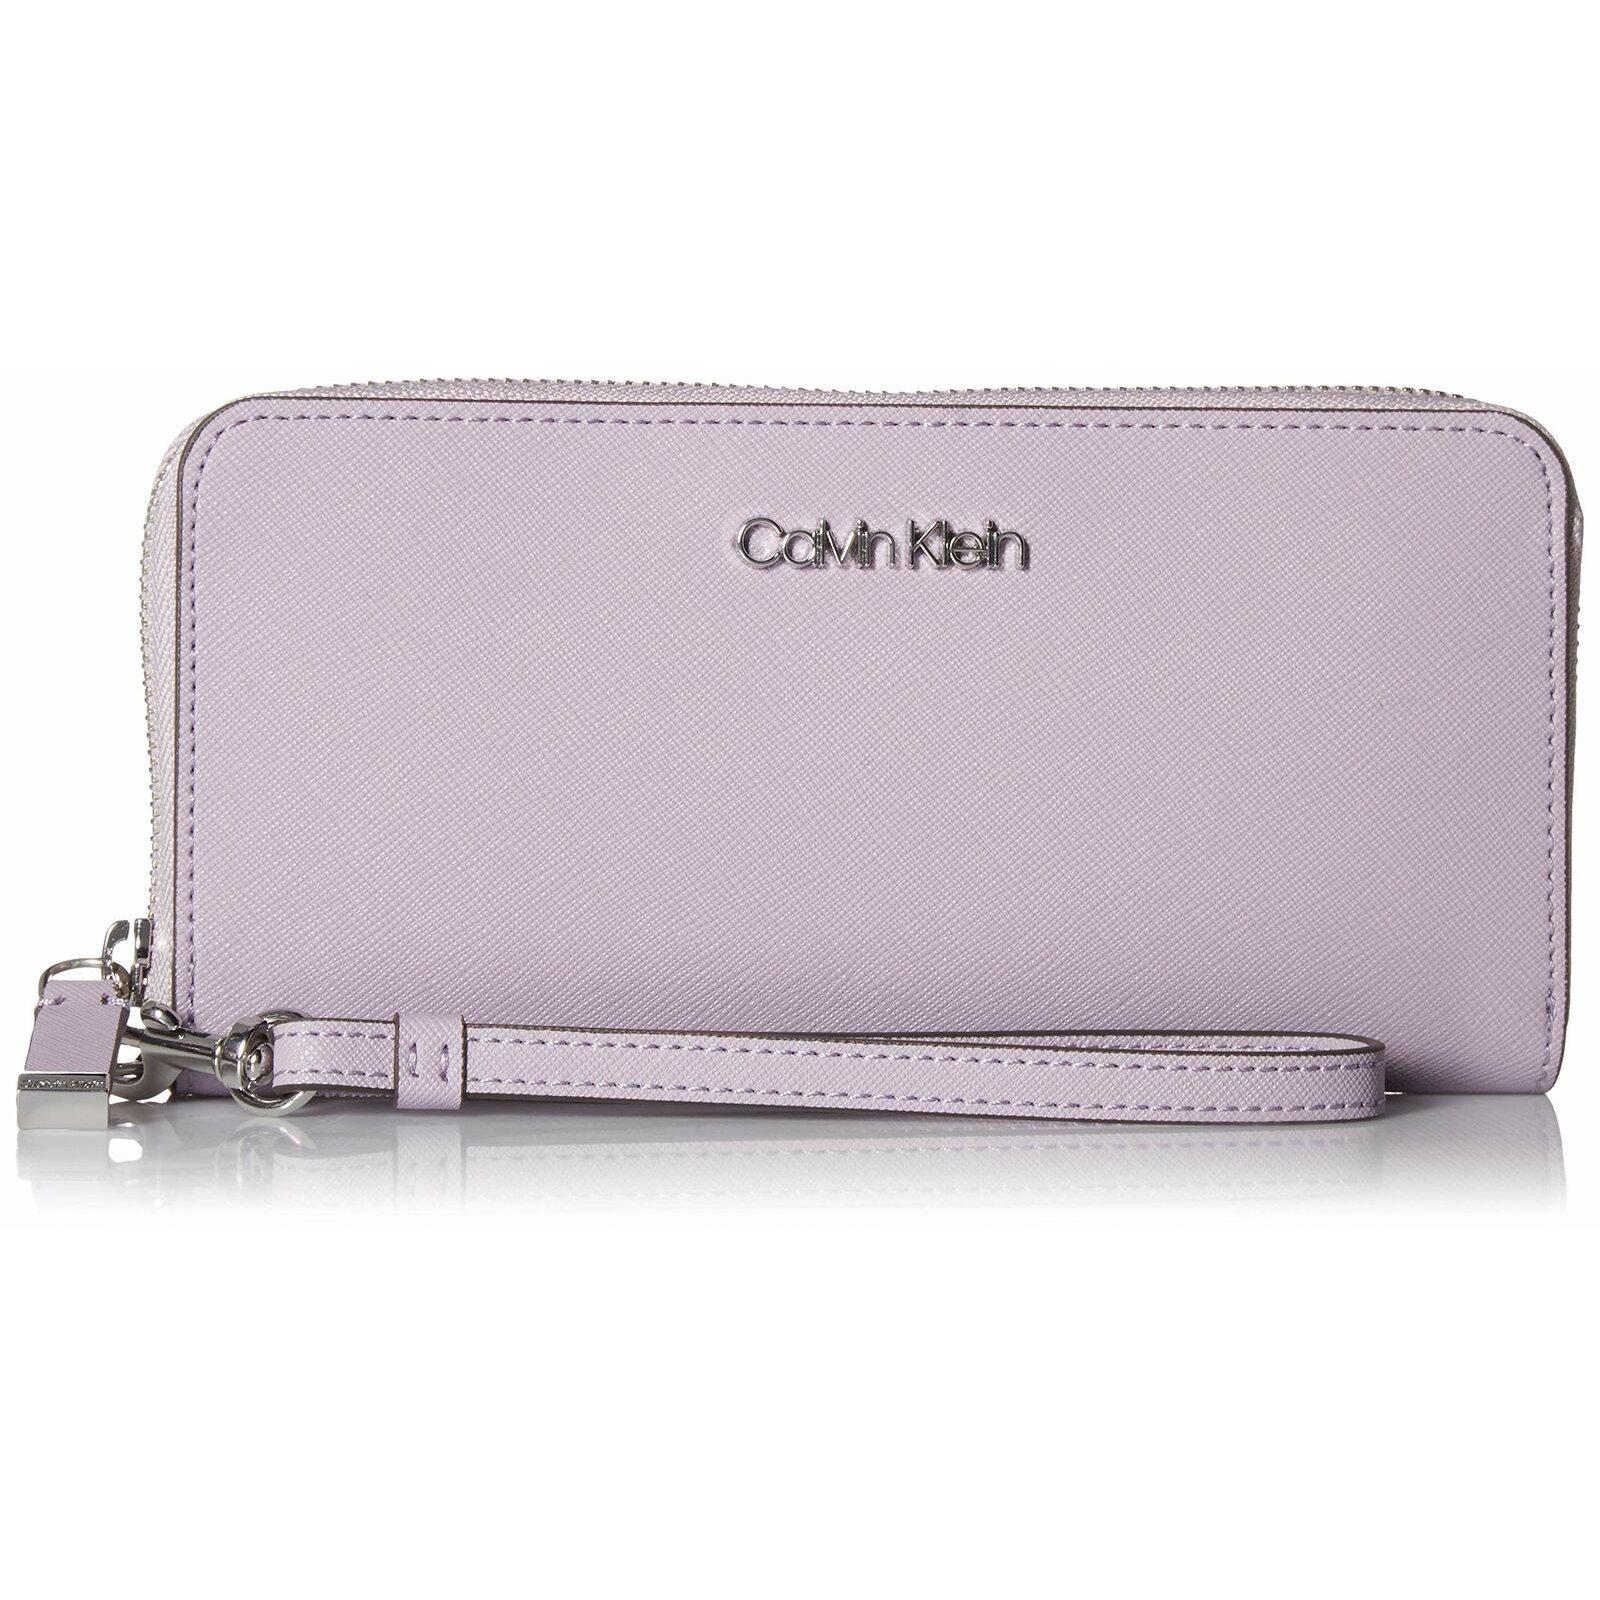 Saffiano Leather Zip-Around Wallet Purple